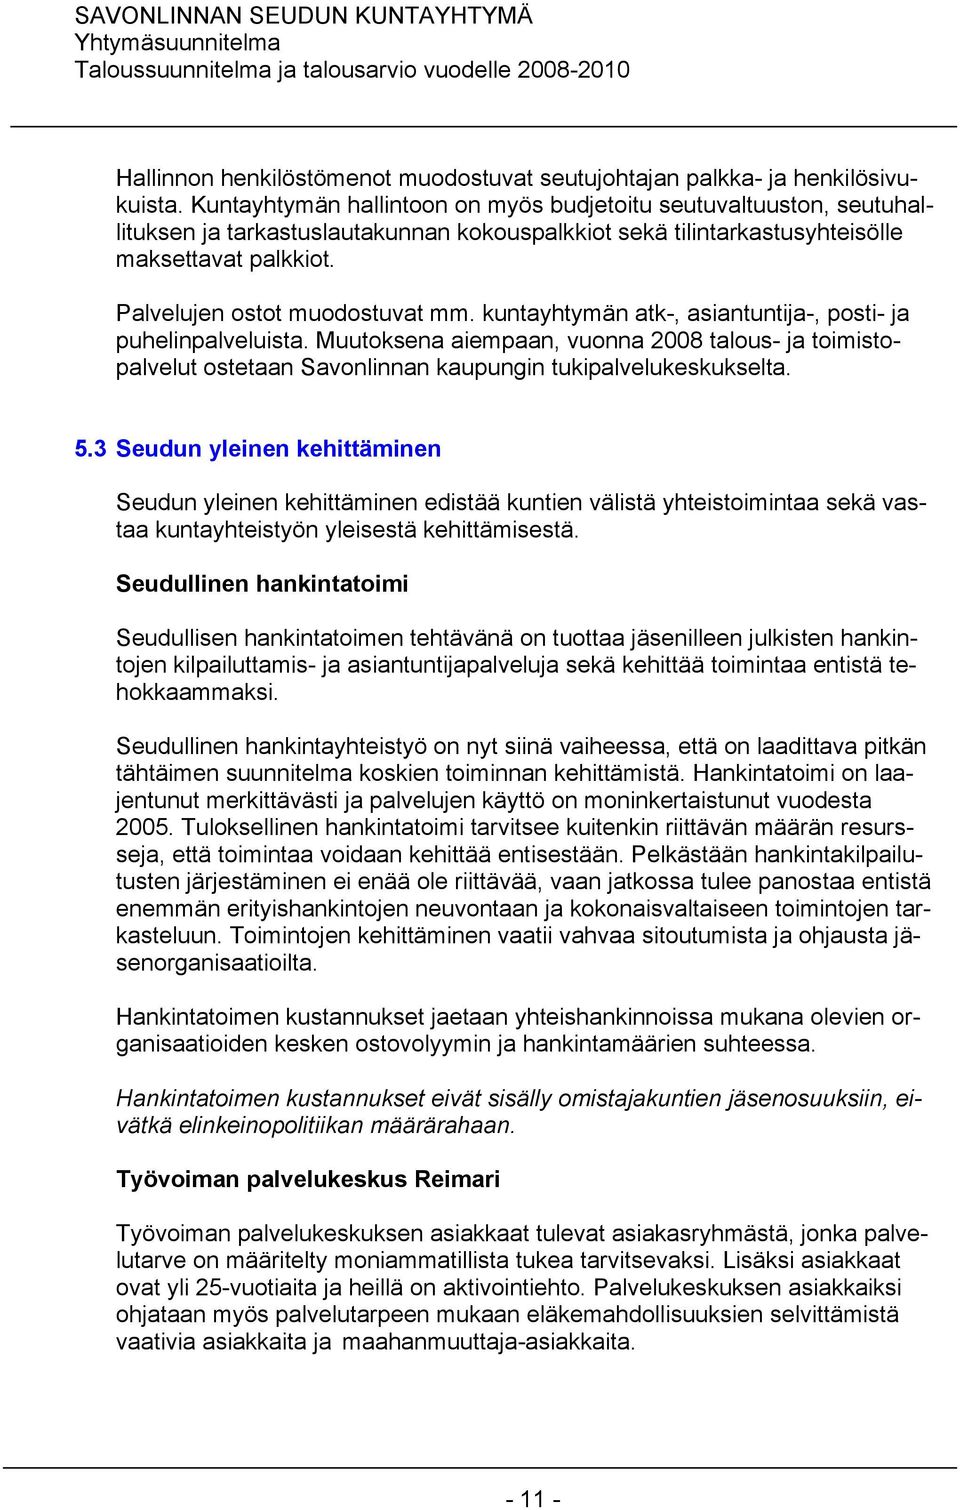 kuntayhtymän atk-, asiantuntija-, posti- ja puhelinpalveluista. Muutoksena aiempaan, vuonna 2008 talous- ja toimistopalvelut ostetaan Savonlinnan kaupungin tukipalvelukeskukselta. 5.